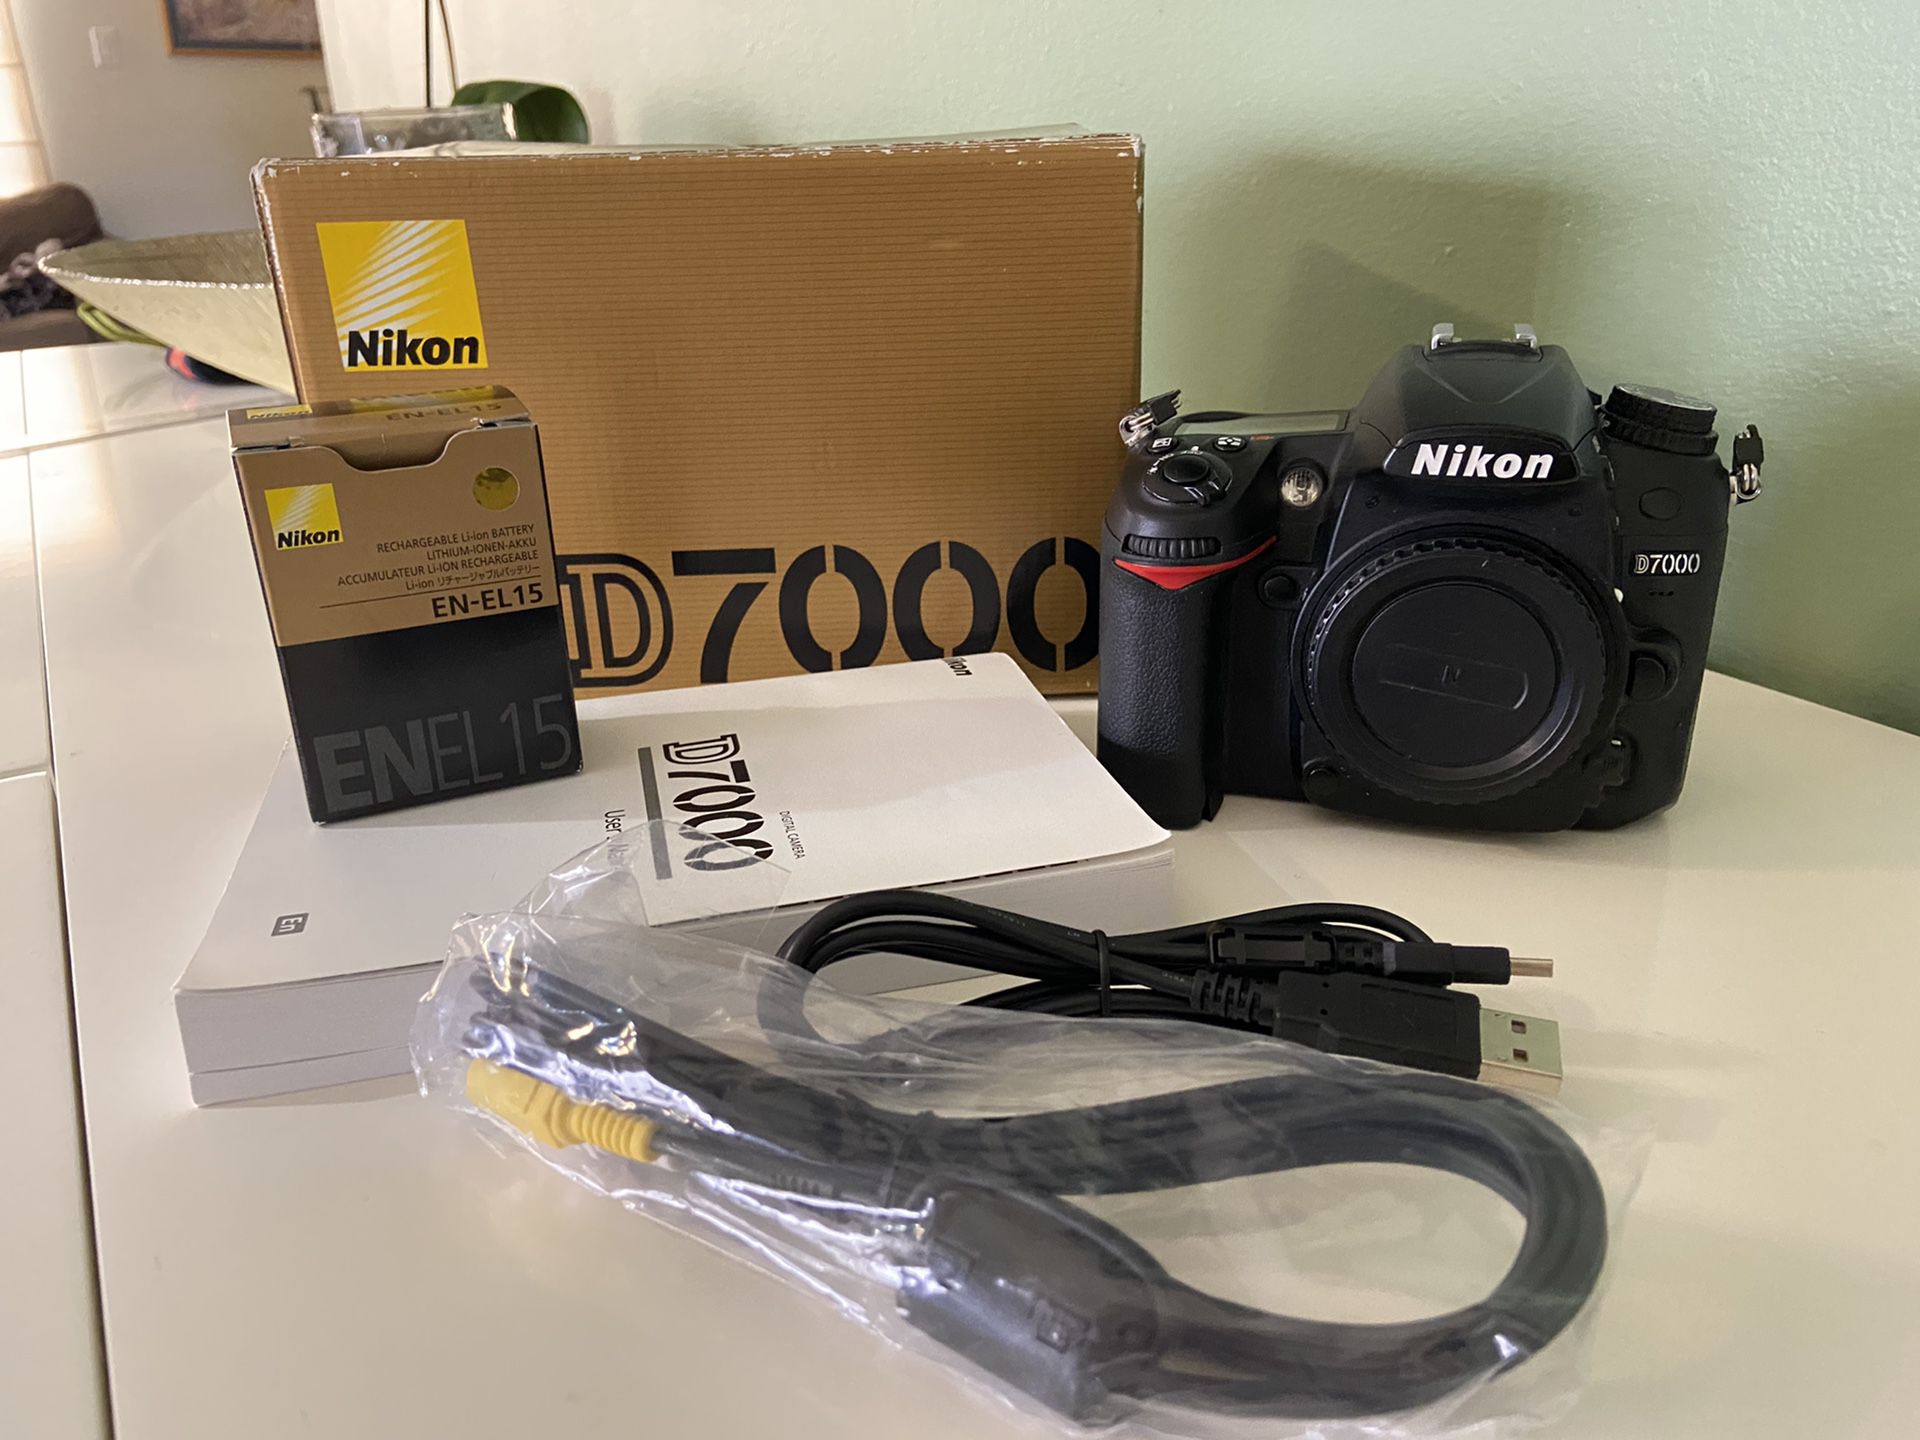 Nikon Camera D7000